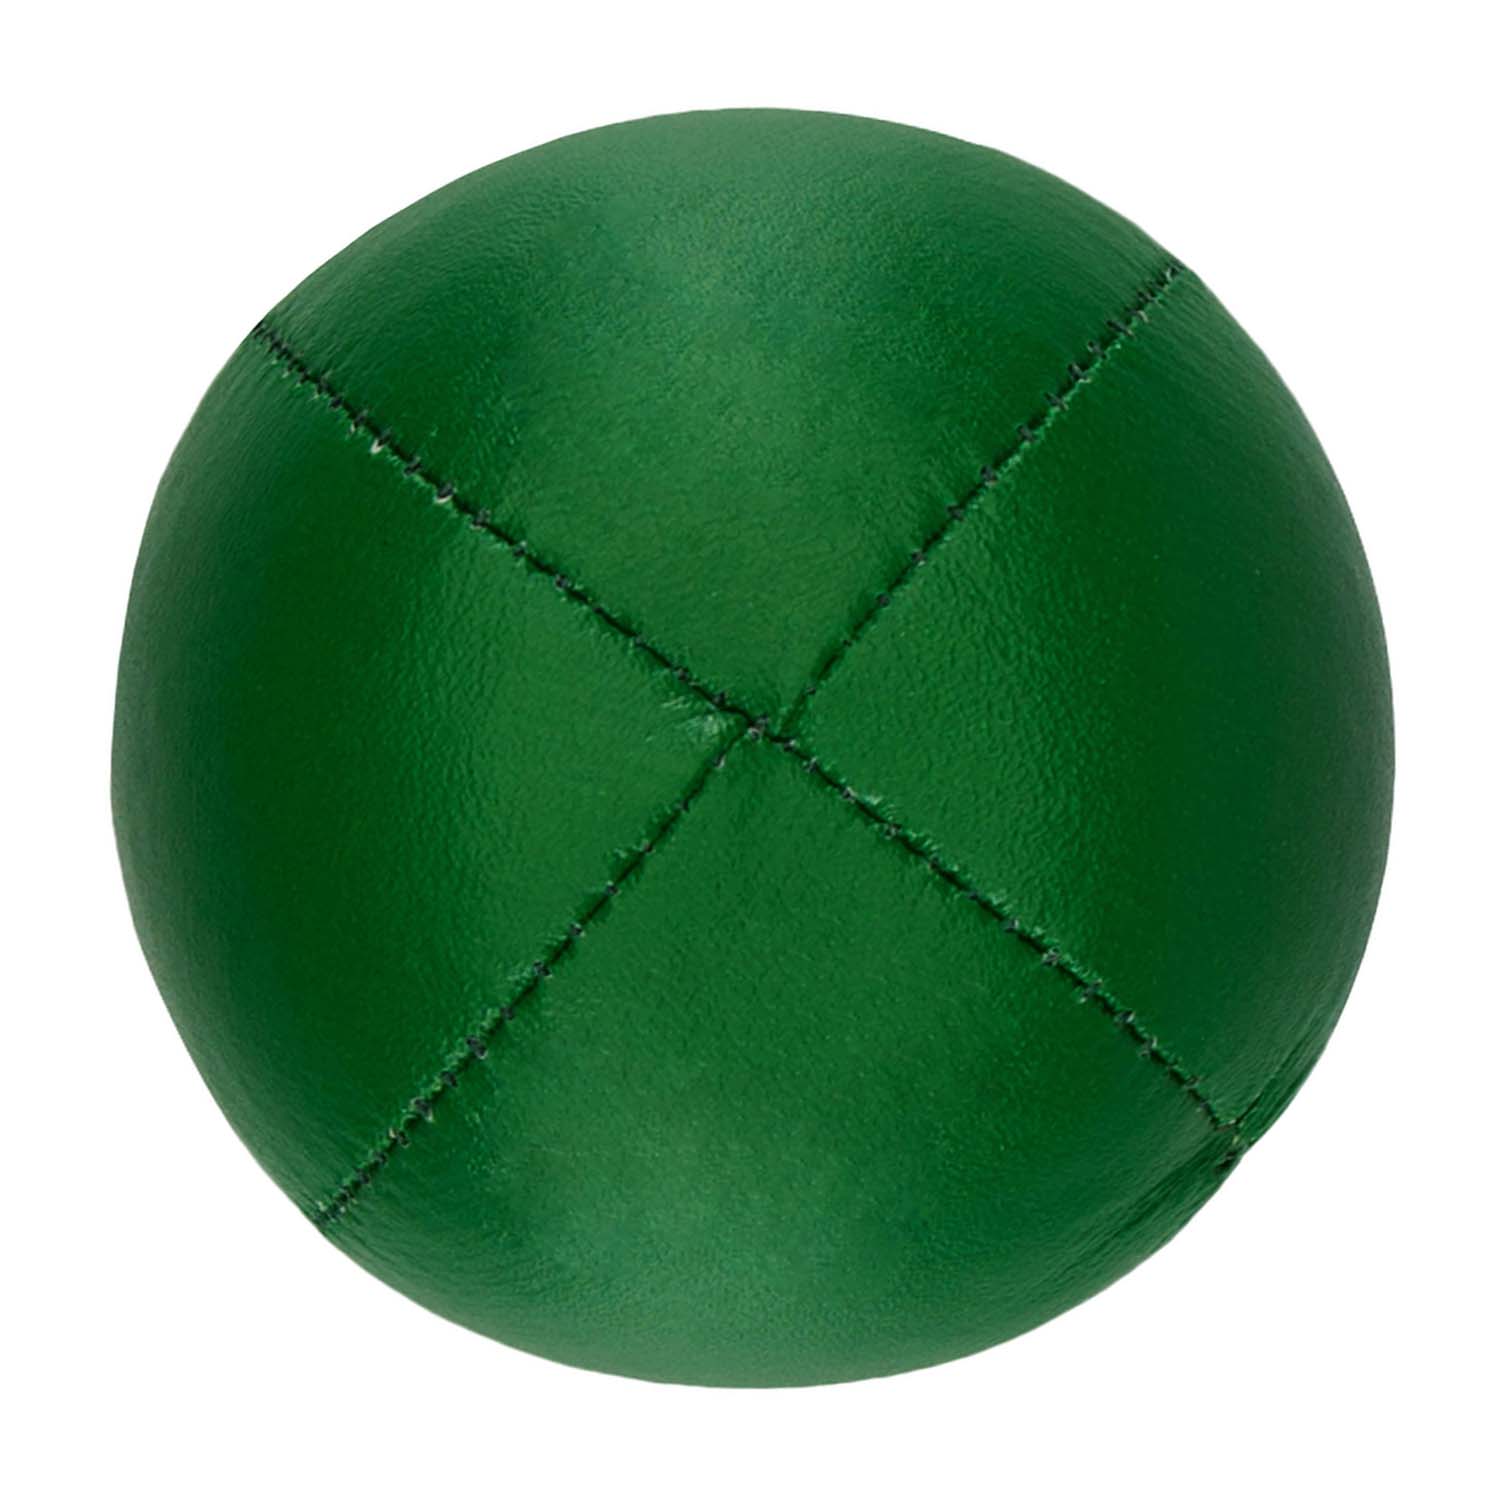 Diabolo Freizeitsport - Premium Soft Jonglierball Einfarbig Grün